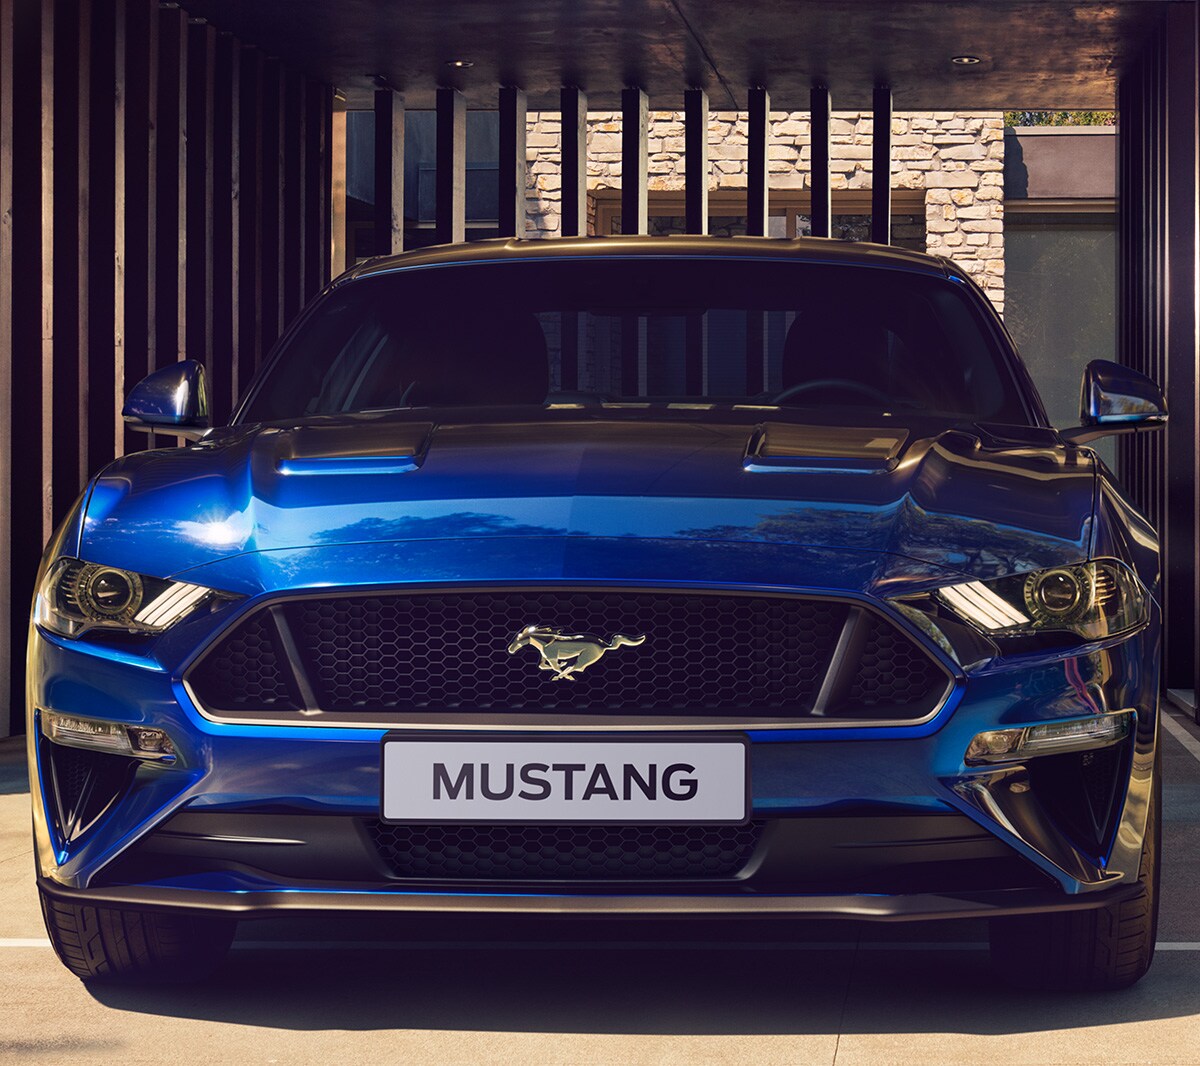 Ford Mustang GT blu parcheggiata presso una grata